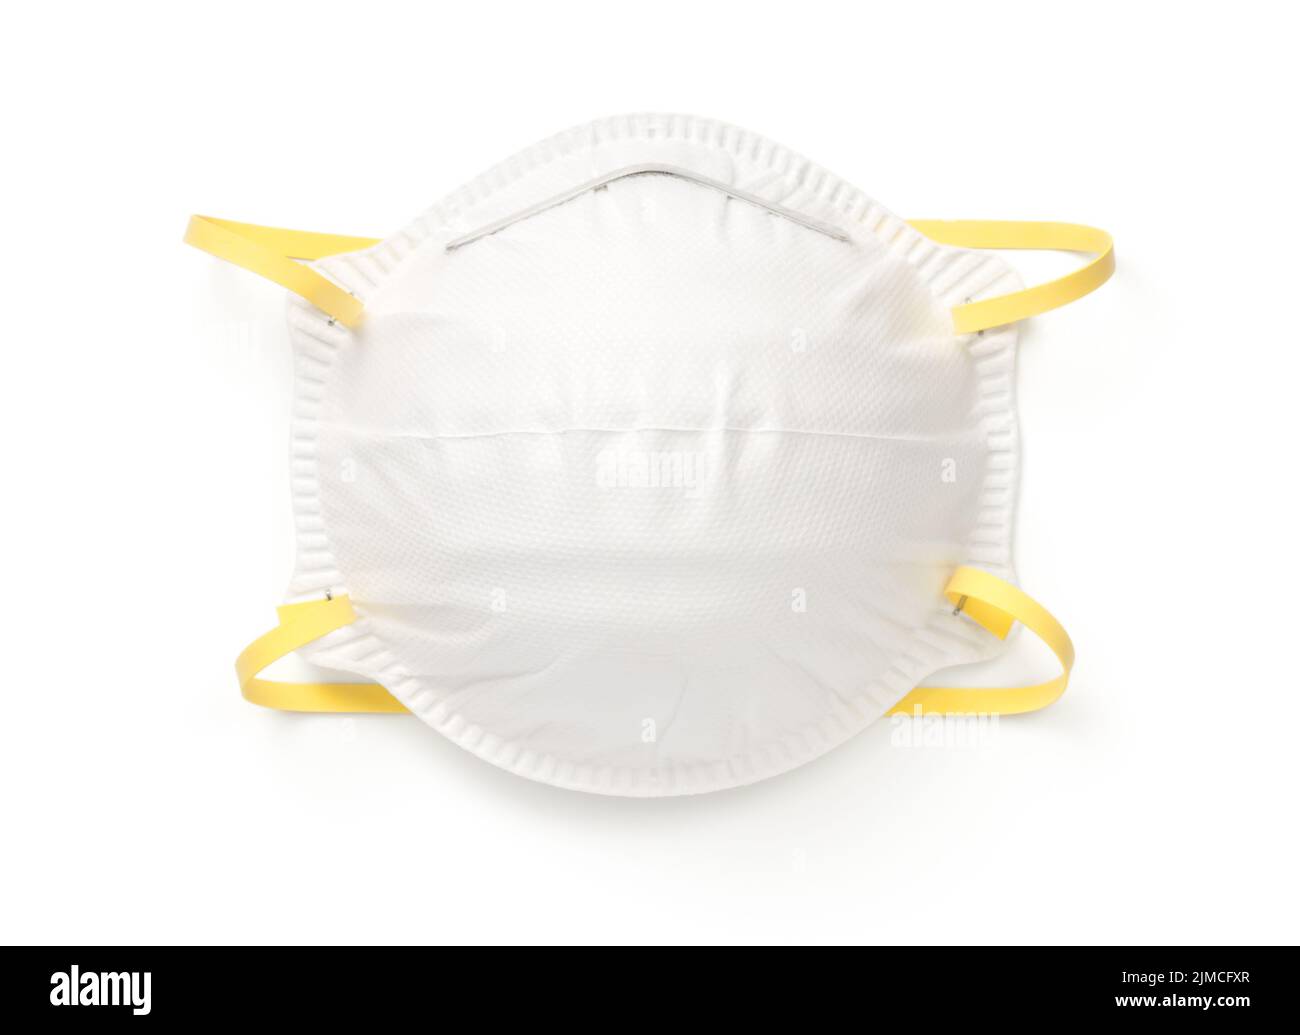 Máscara de protección respiratoria aislada sobre fondo blanco Foto de stock